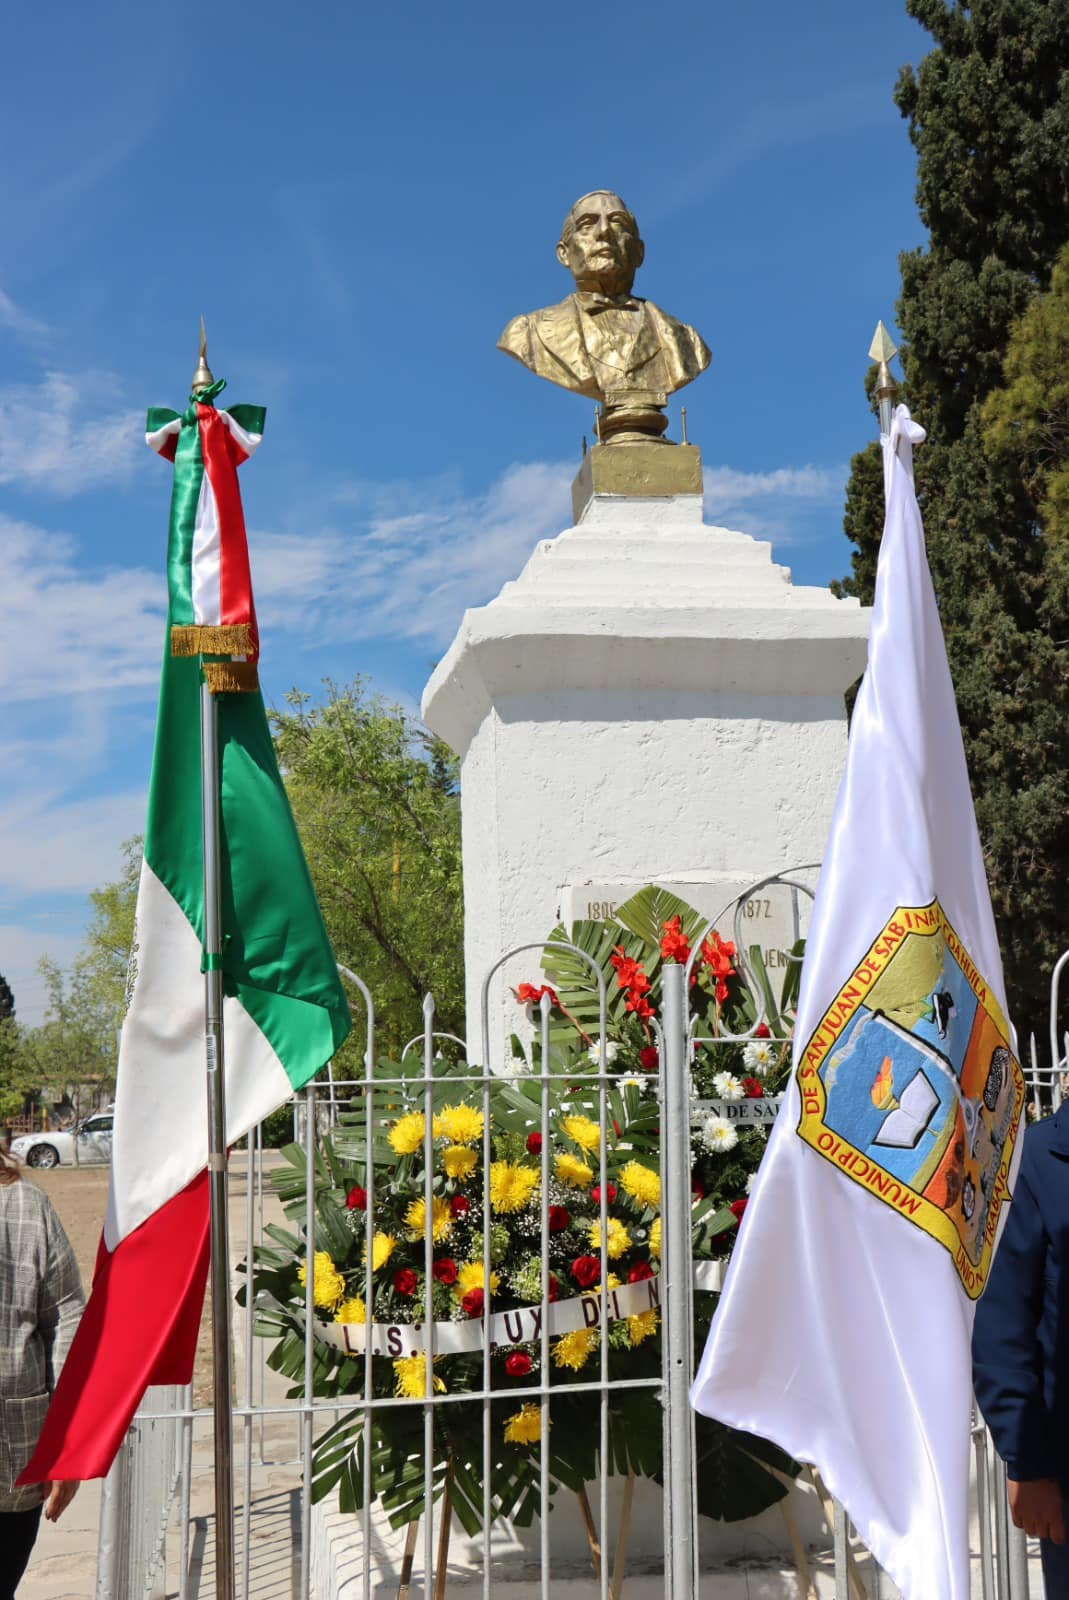 Encabeza MALG ceremonia por natalicio de Benito Juárez